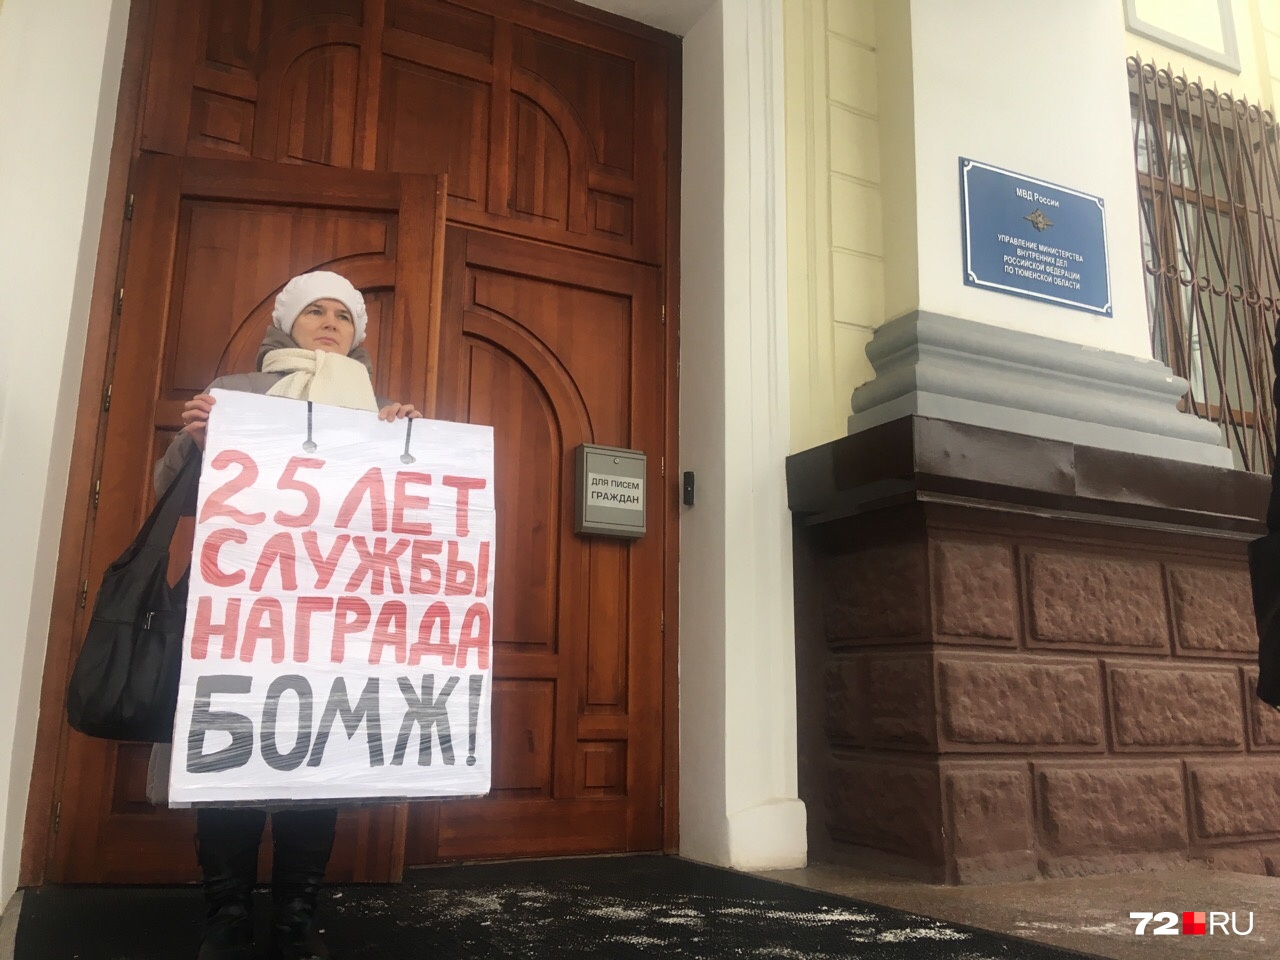 Супругу тюменца Людмилу Функ не впустили в здание. Она осталась стоять с плакатом на улице